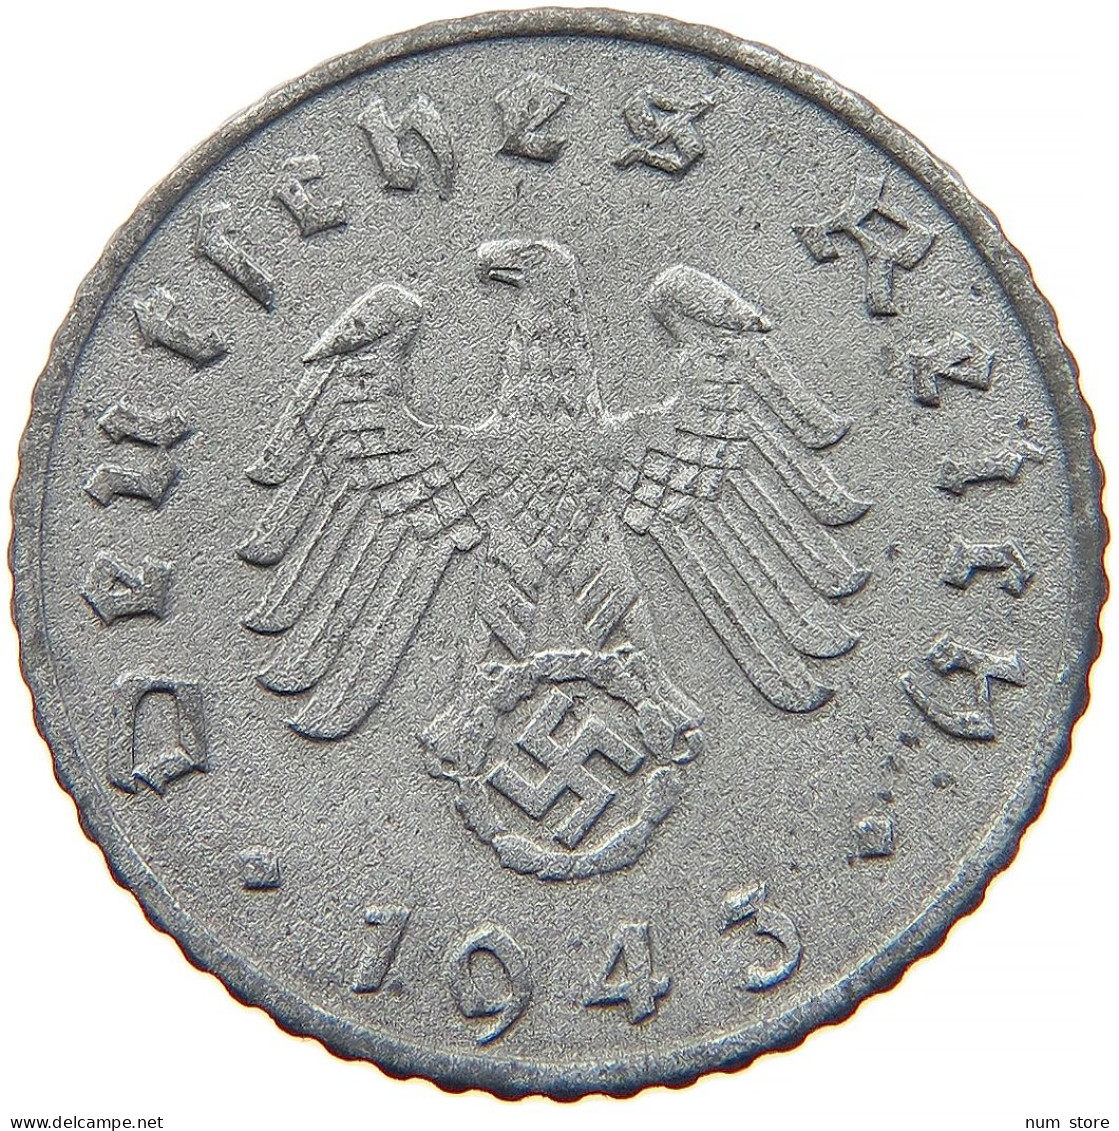 GERMANY 5 REICHSPFENNIG 1943 A #s091 0887 - 5 Reichspfennig